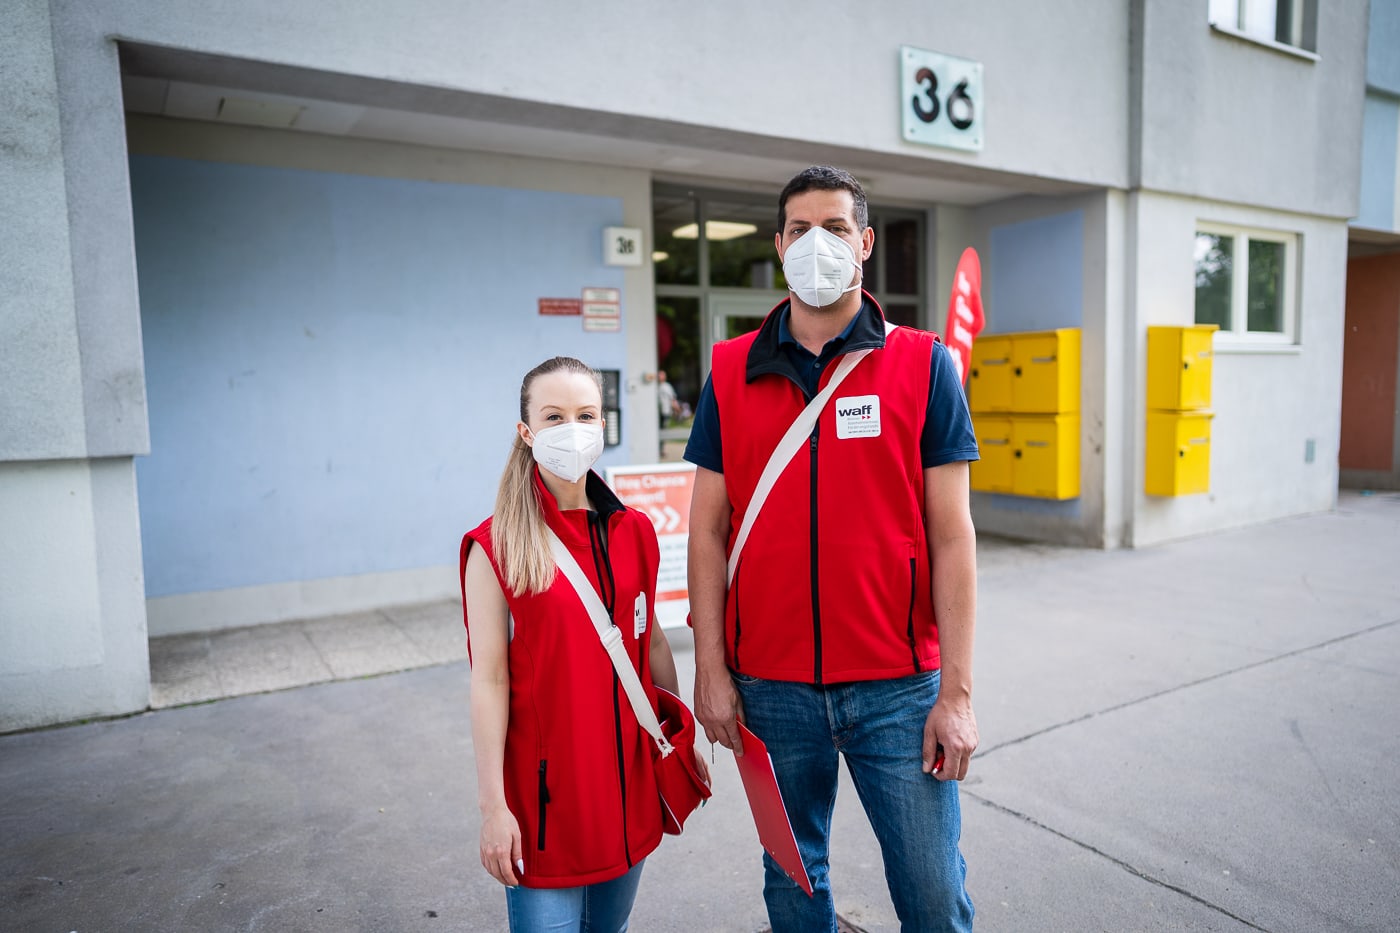 Zwei Promotoren im Gemeindebau während der Pandemie mit Maske